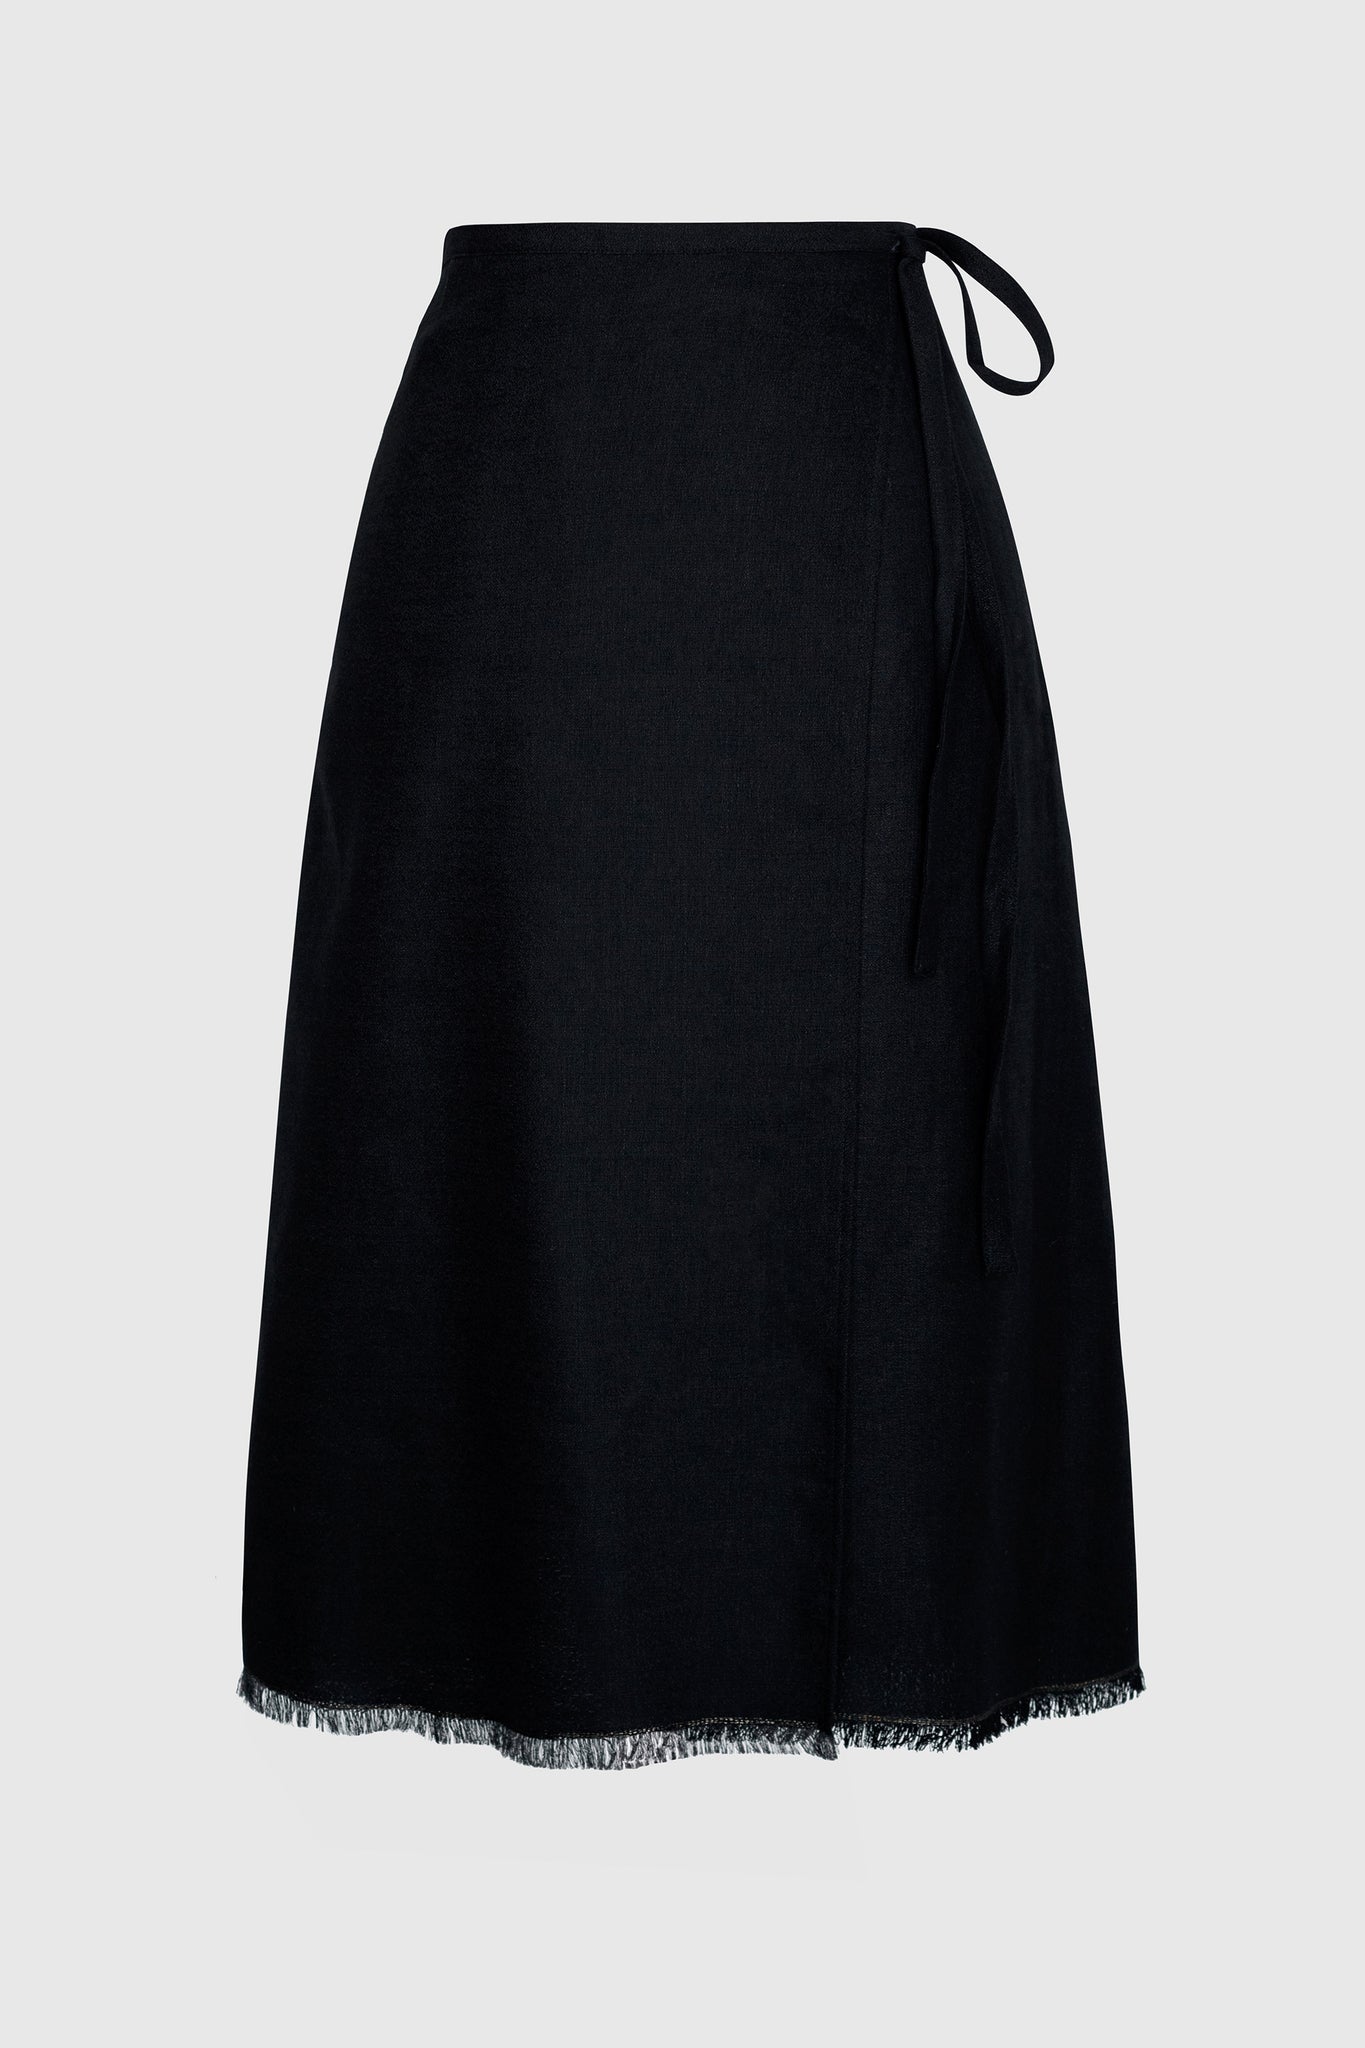 Ballerina Skirt - Black Wool